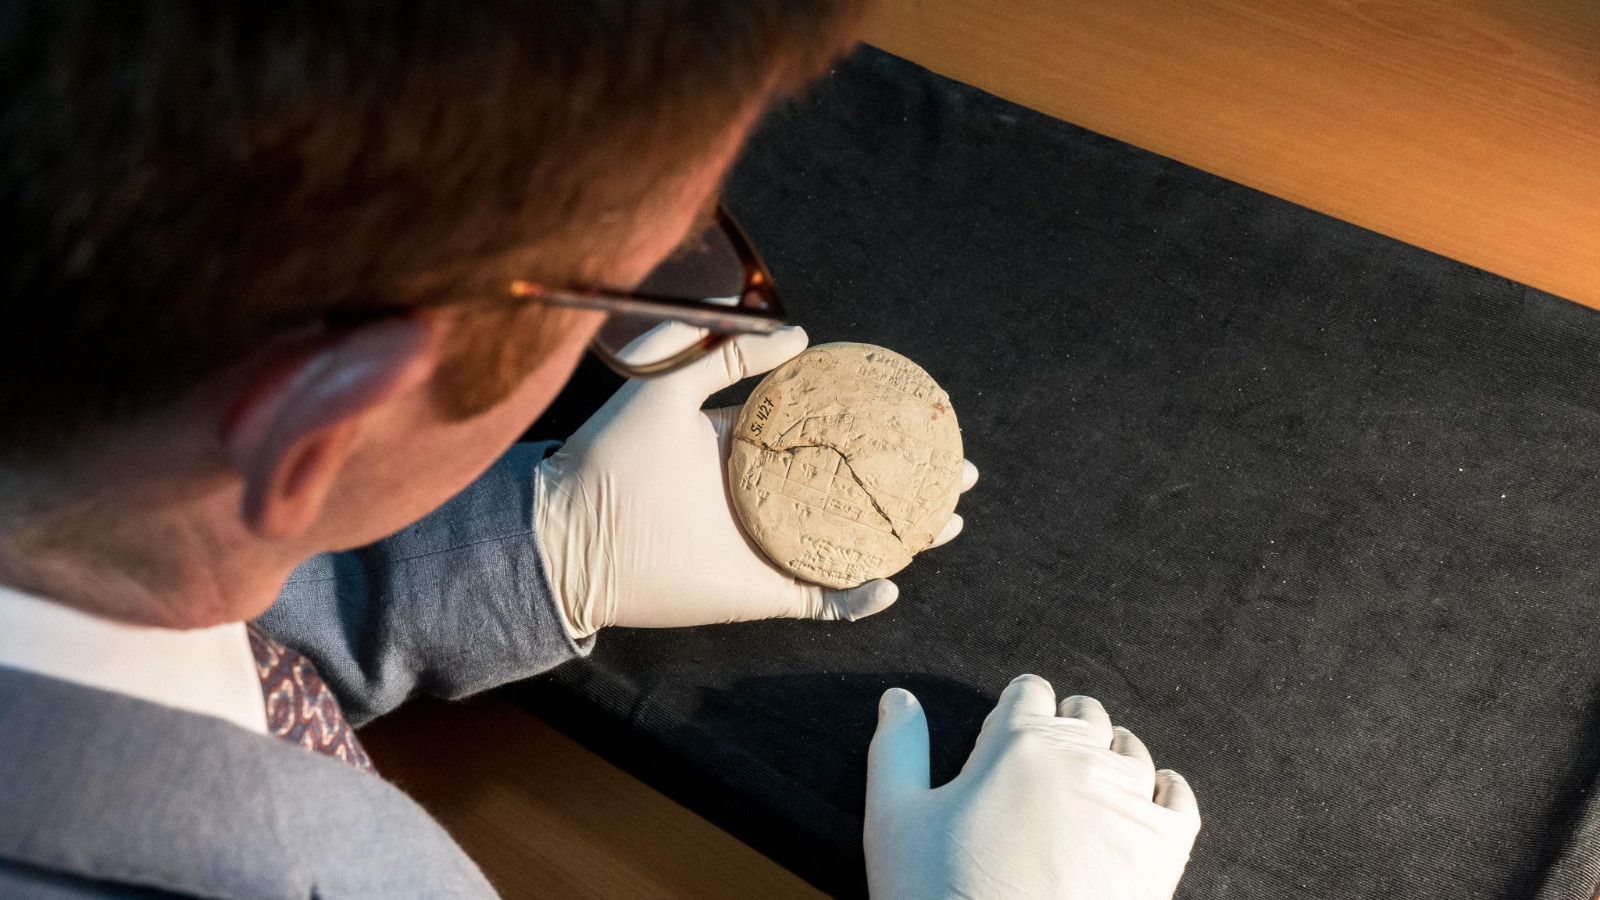 土耳其伊斯坦布尔博物馆3700年历史泥板揭示应用几何学的起源